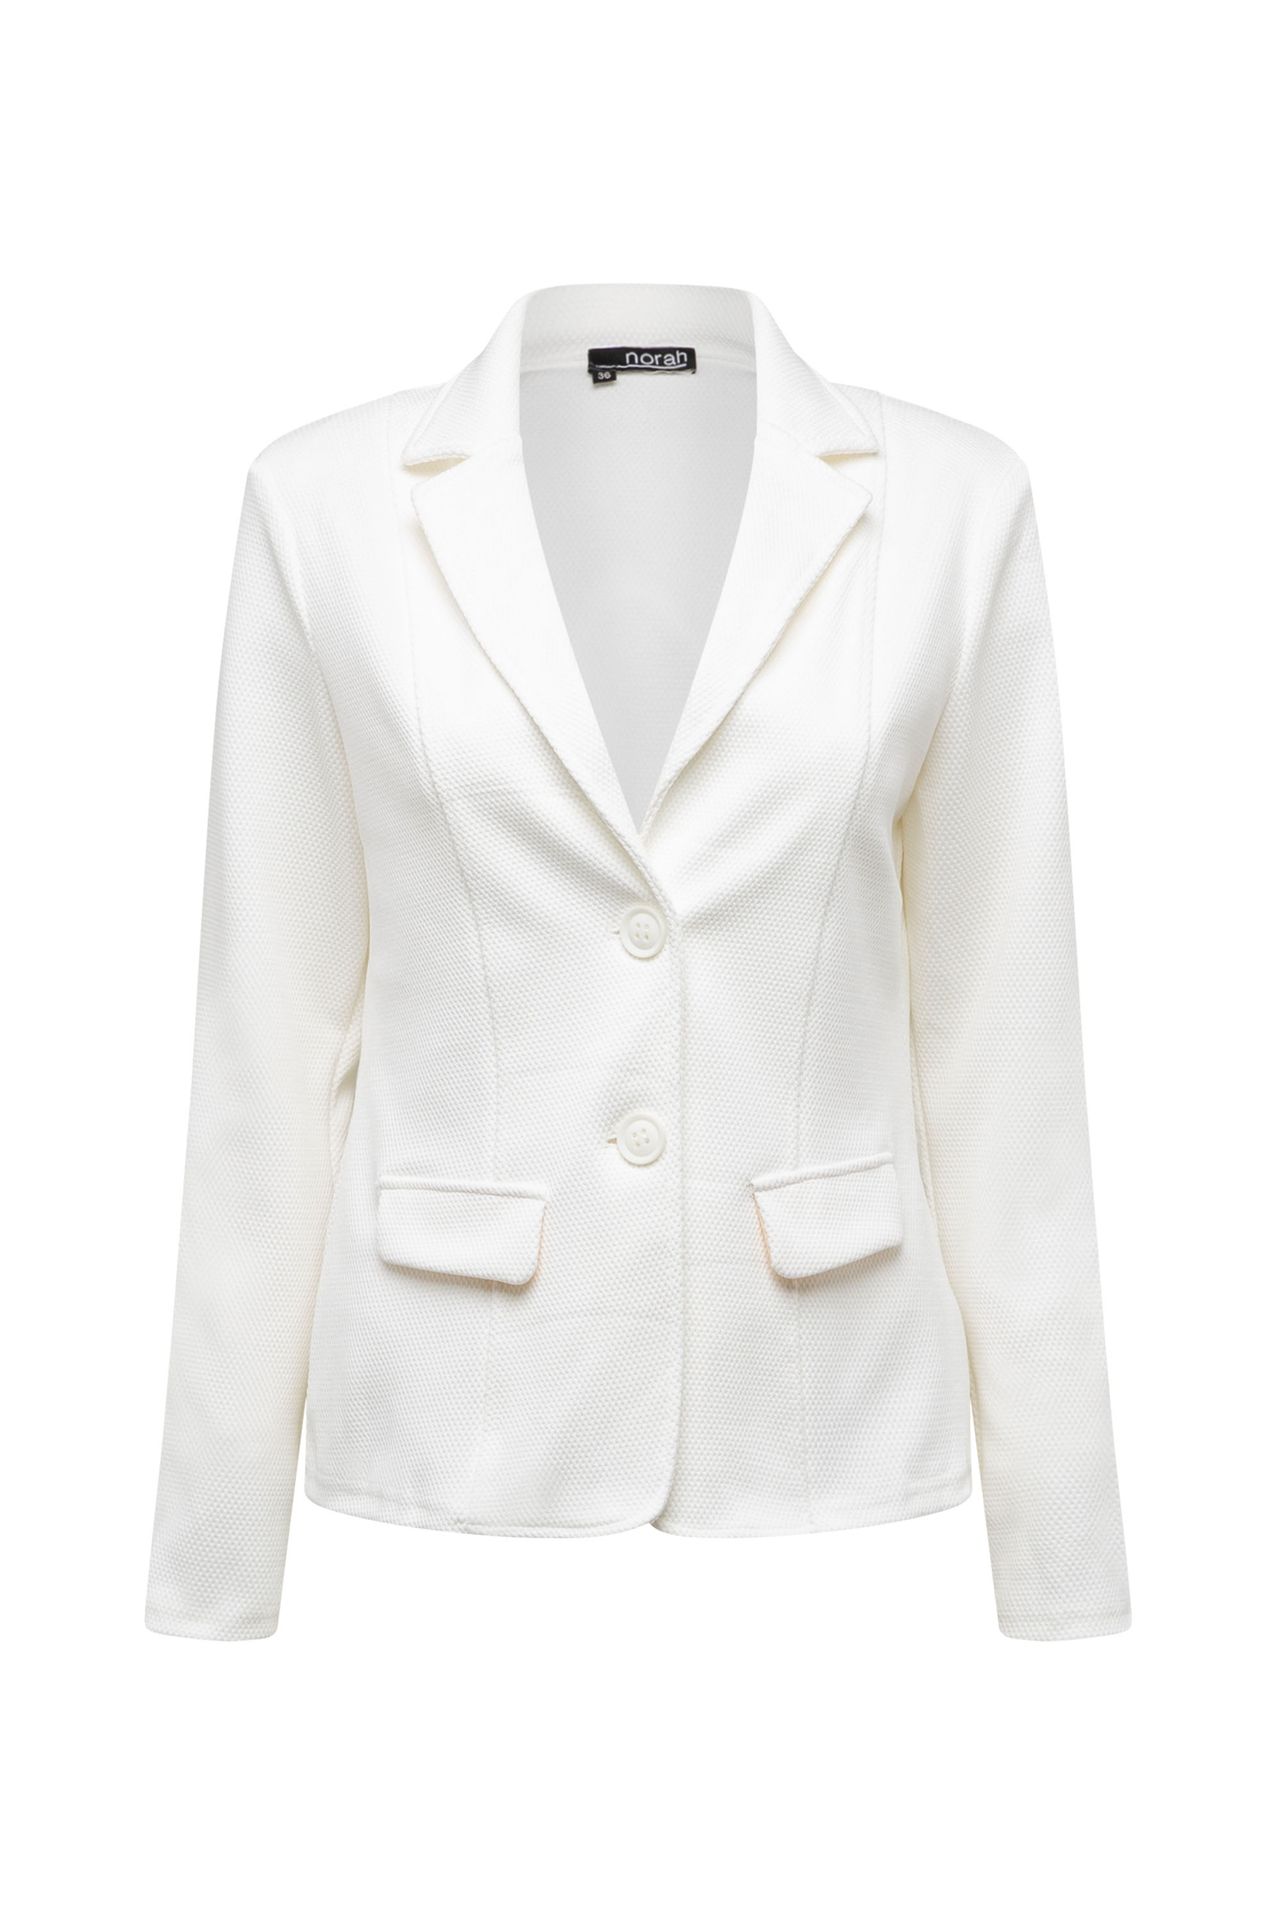  Witte blazer white 213392-100-40